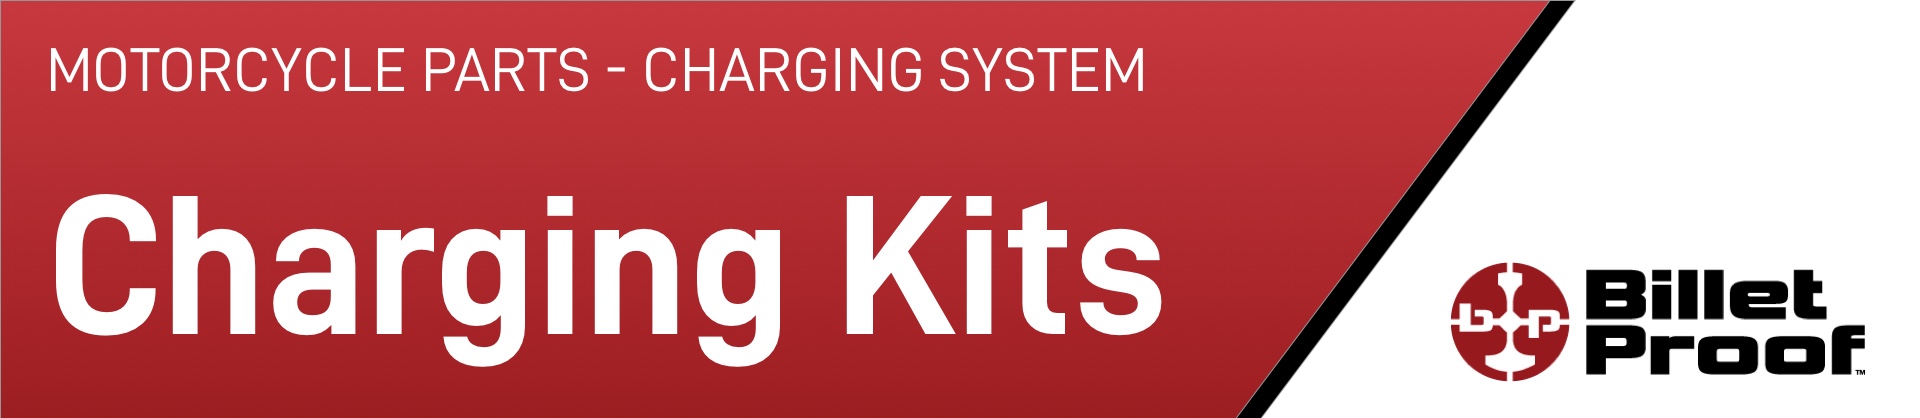 motorcycle-parts-charging-system-charging-kits.jpg